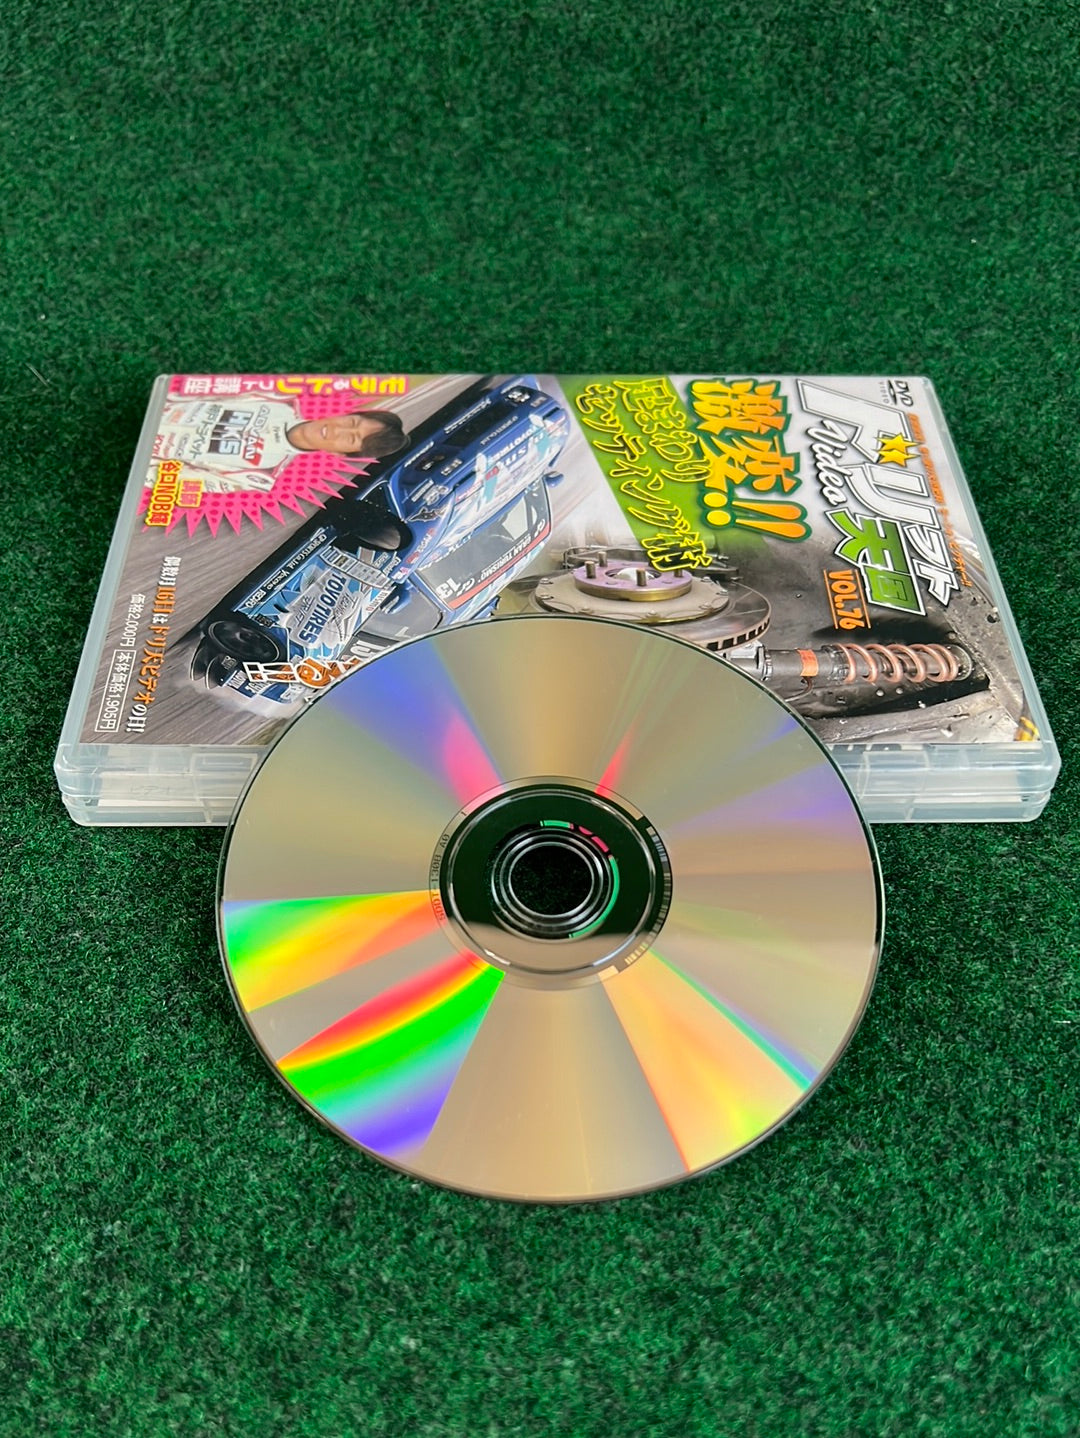 Drift Tengoku DVD - Vol. 76